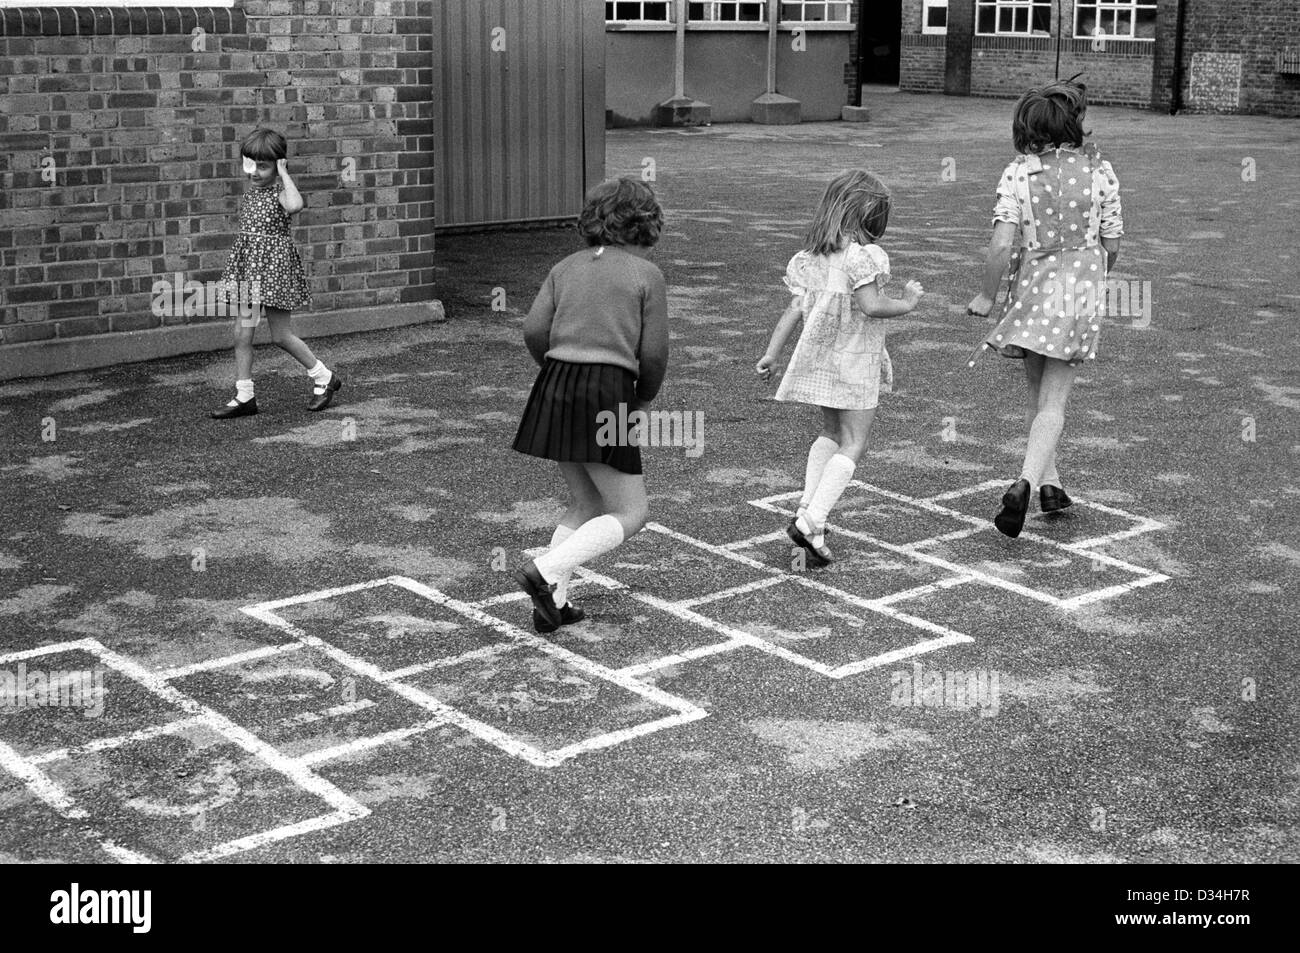 Grundschule Spielplatz Hoppscotch Hop scotch. Mädchen spielen zusammen. South London. 1970s Großbritannien. Das junge Mädchen links trägt einen Augenfleck. HOMER SYKES Stockfoto